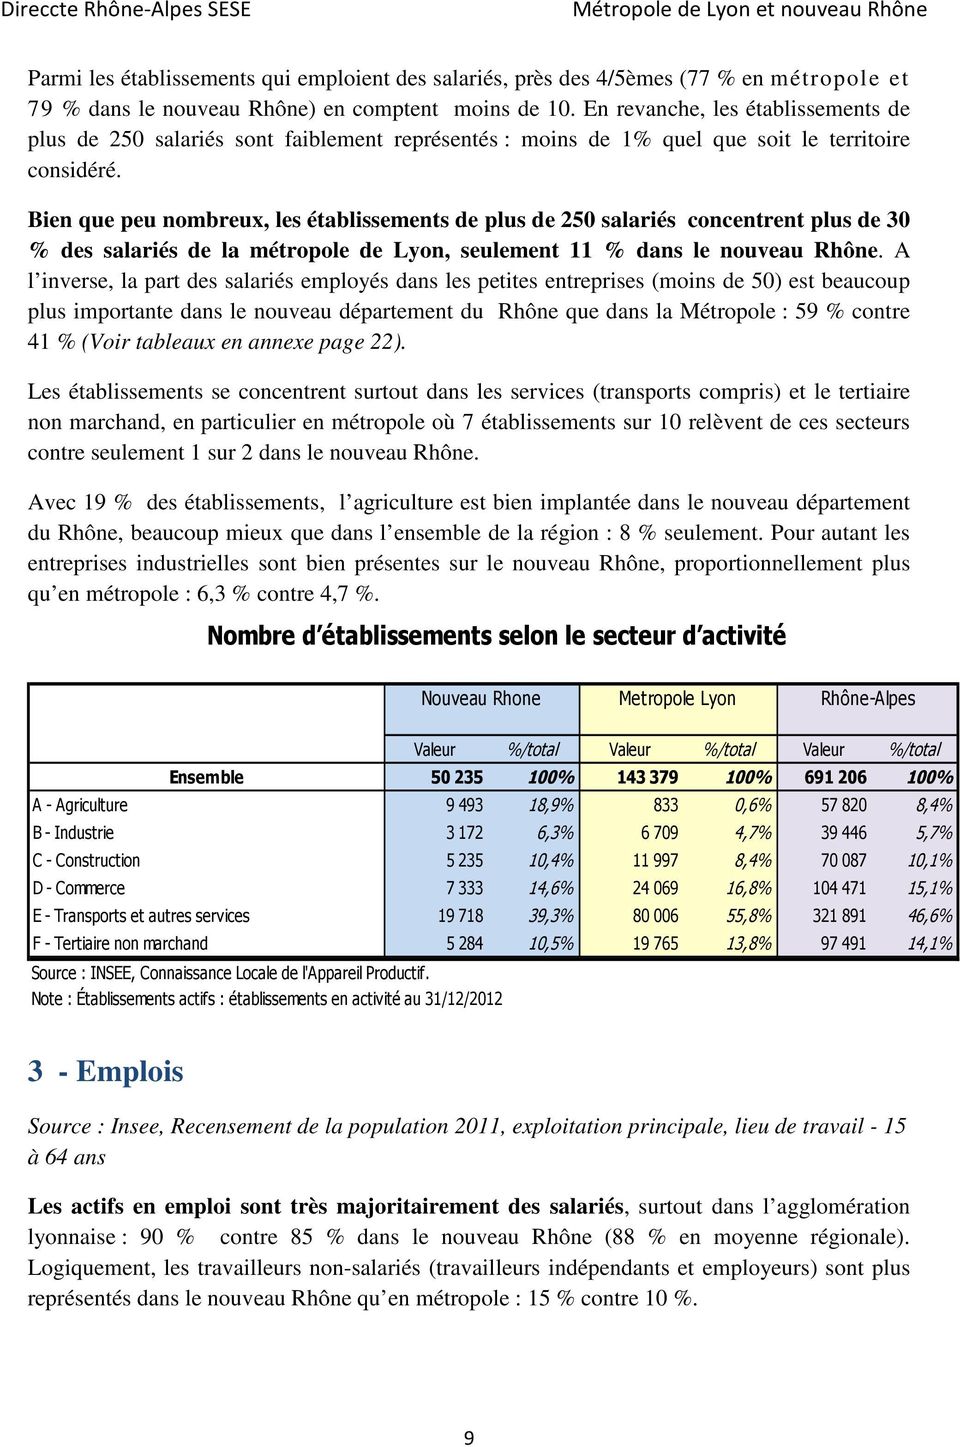 Bien que peu nombreux, les établissements de plus de 250 salariés concentrent plus de 30 % des salariés de la métropole de Lyon, seulement 11 % dans le nouveau Rhône.